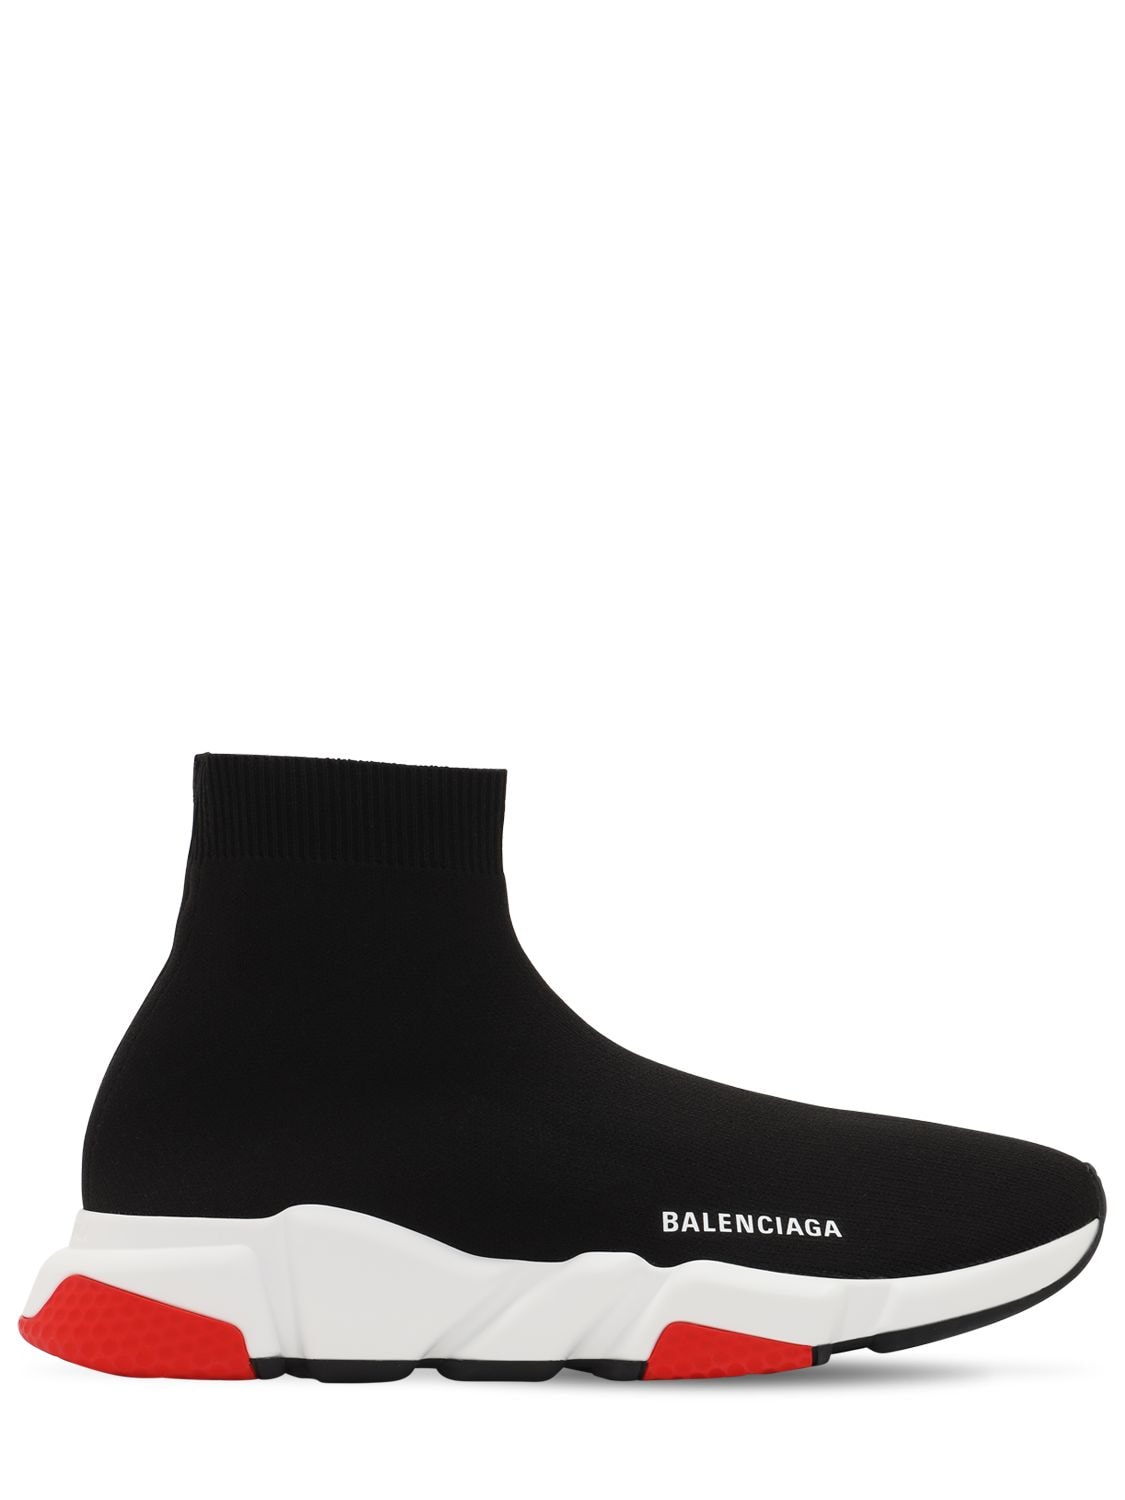 BALENCIAGA “SPEED”针织运动鞋,72IOFY010-MTAXOQ2